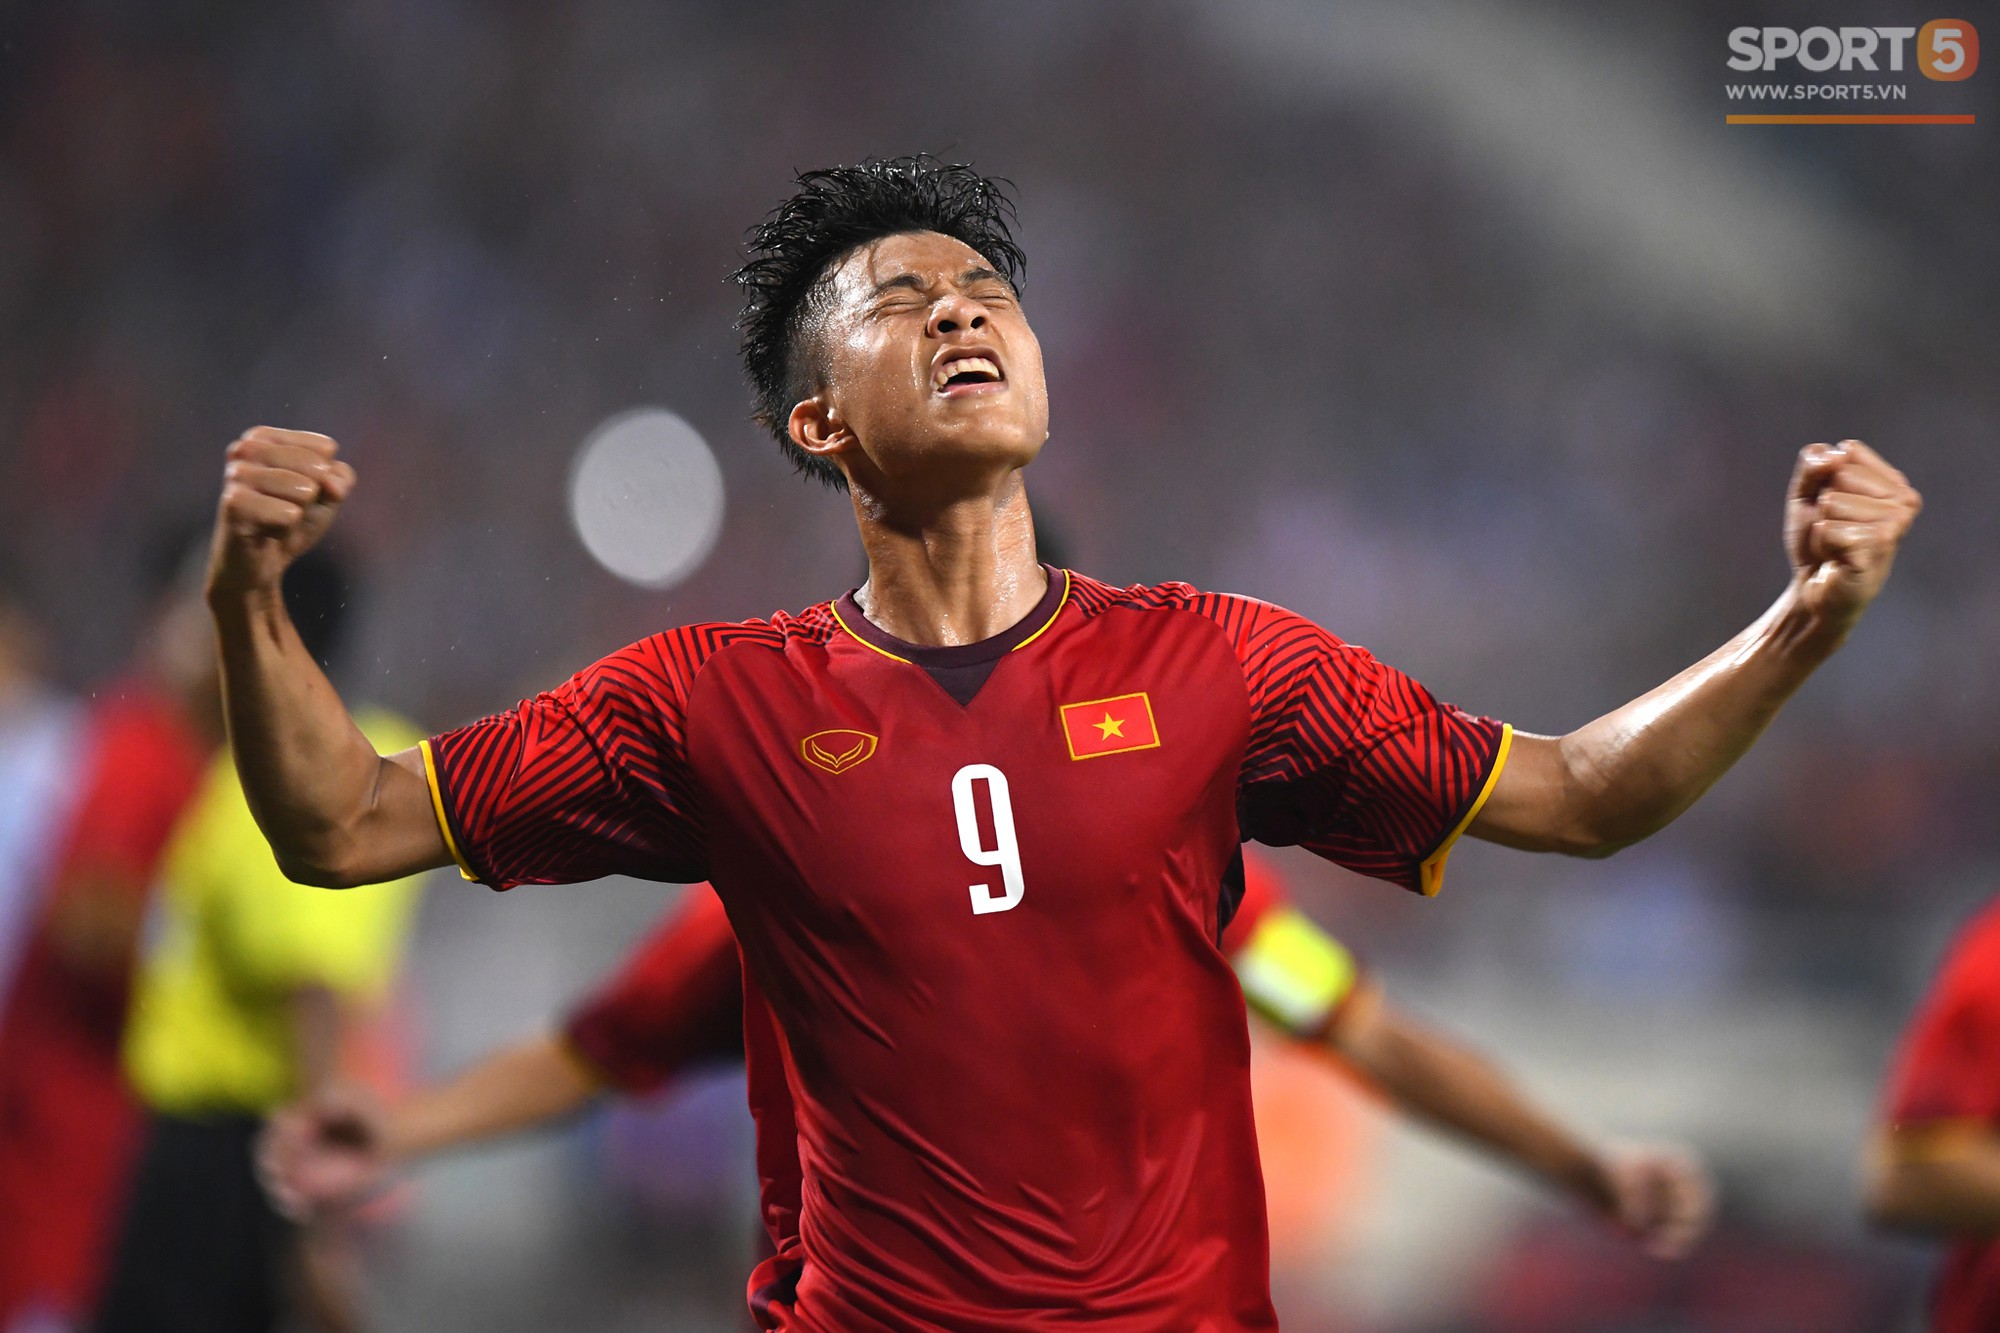 Văn Đức tỏa sáng với 1 pha xử lý đẳng cấp, U23 Việt Nam hòa U23 Uzbekistan trong trận đấu cuối cùng - Ảnh 5.